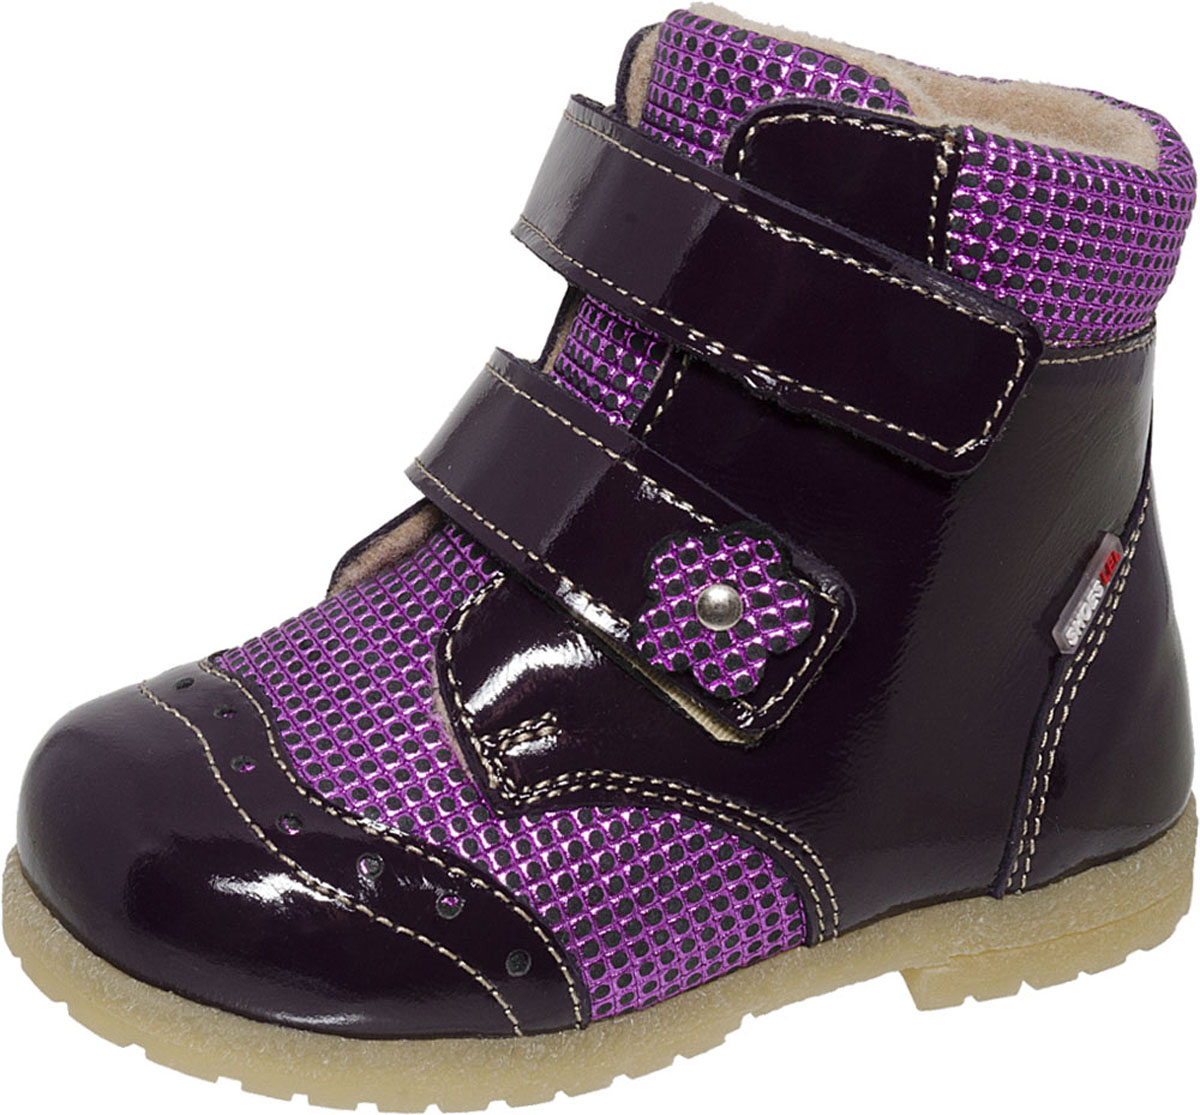 Ботинки для девочки Лель, цвет: фиолетовый. 2-1005. Размер 21